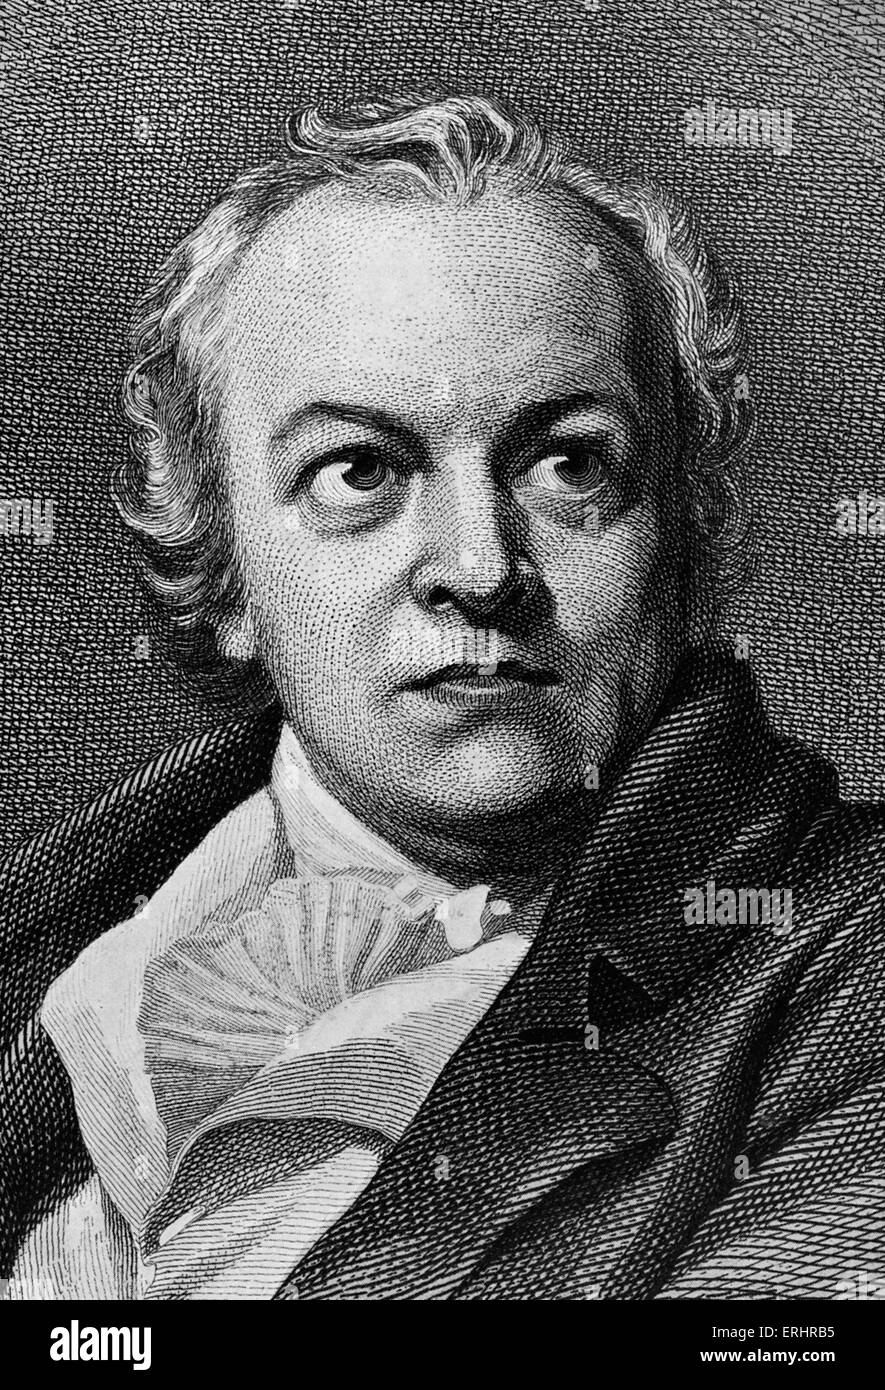 William Blake - après le portrait par Phillips. Poète, peintre et graveur : 28 novembre 1757 - 12 août 1827. Banque D'Images